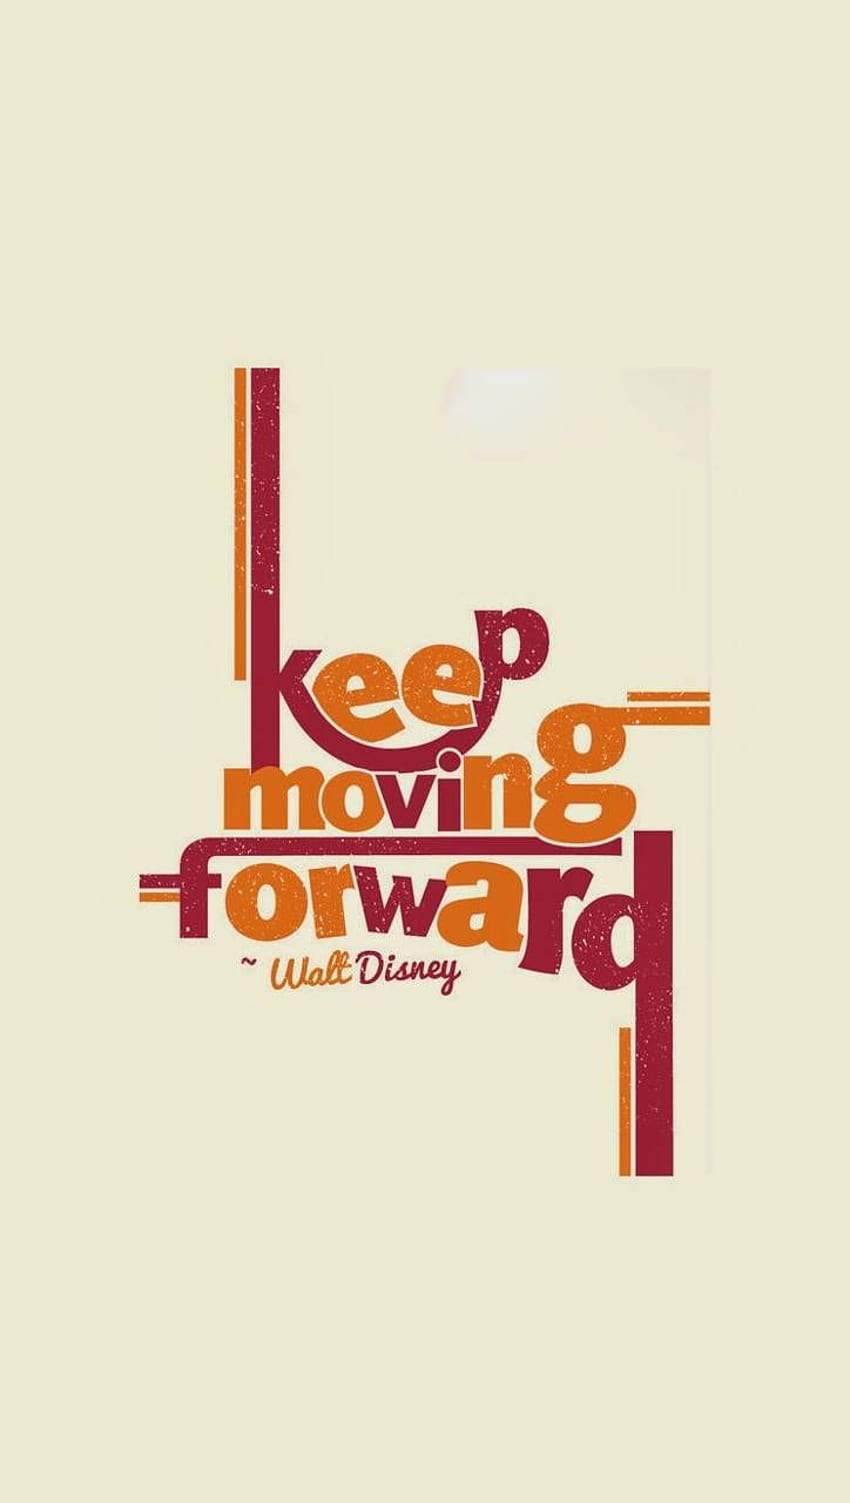 keep moving forward walt disney